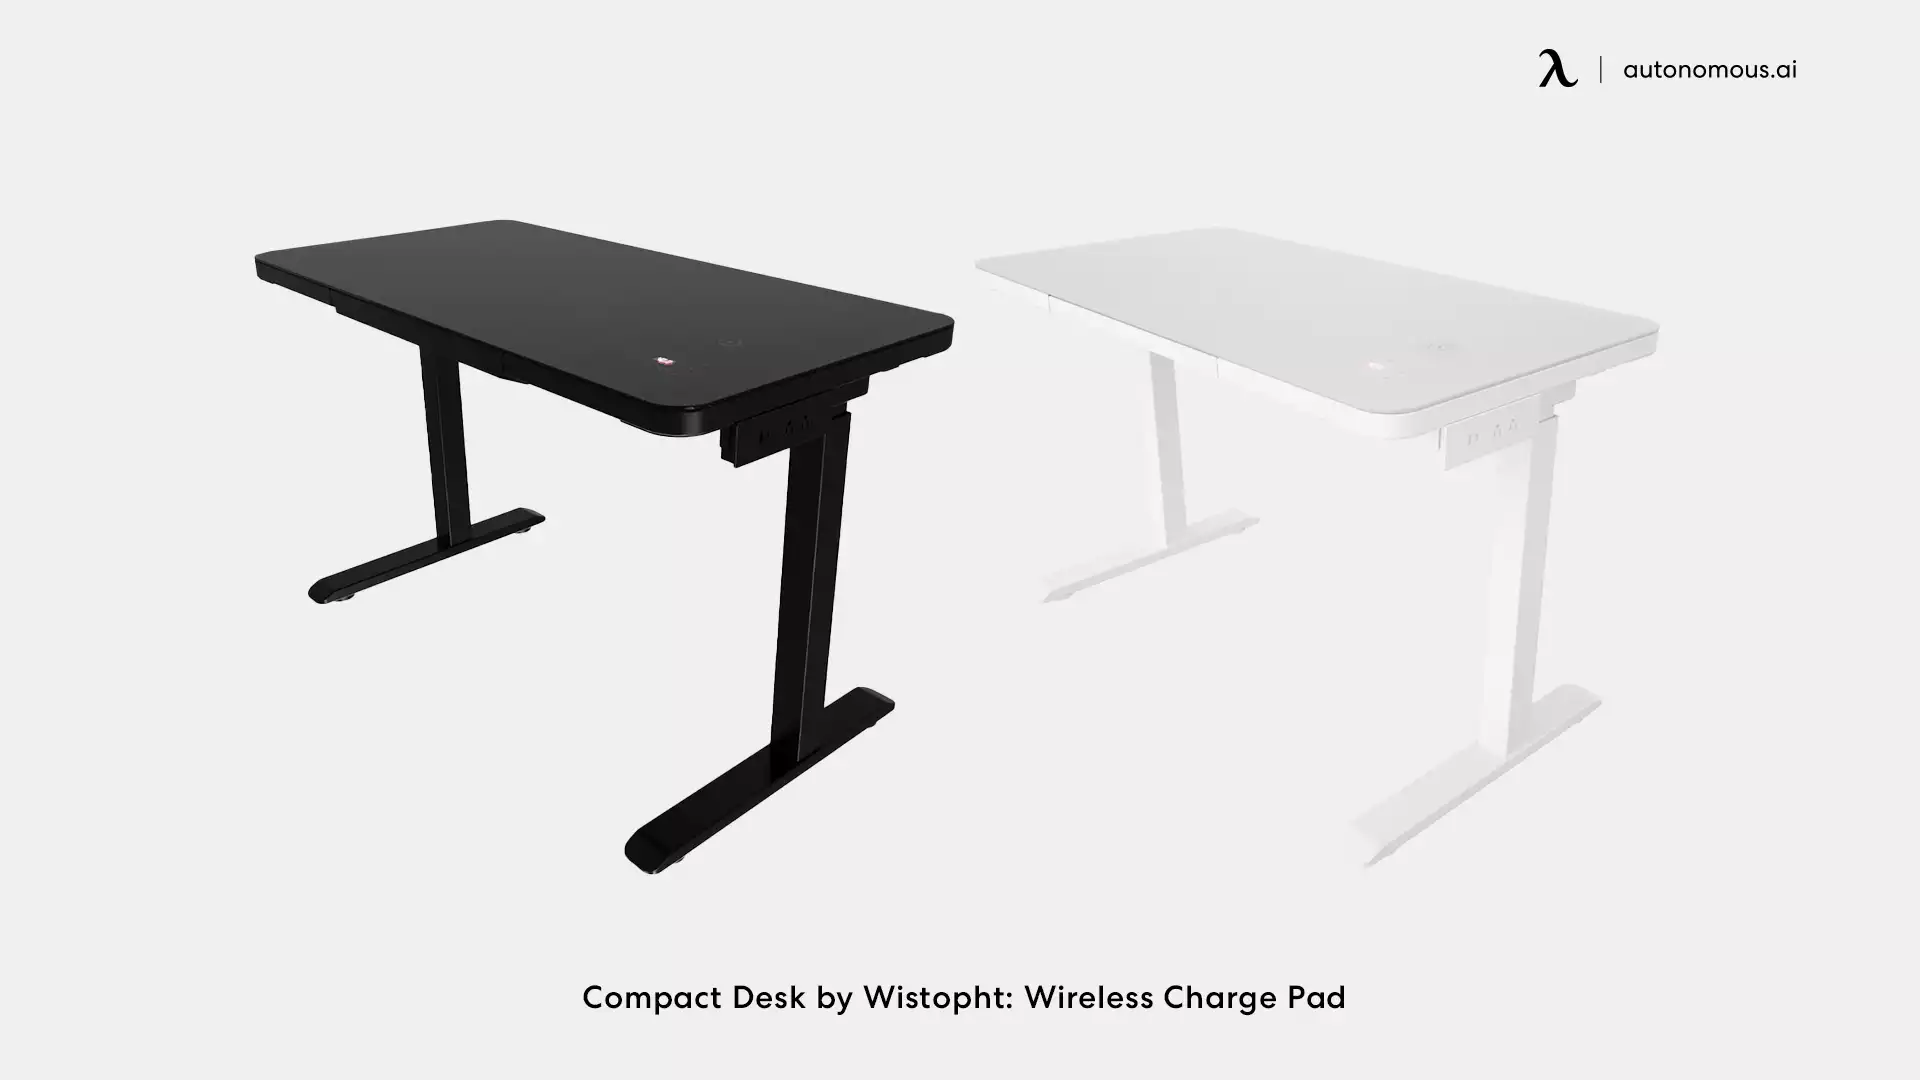 Wistohpt CompactDesk standing desk with storage